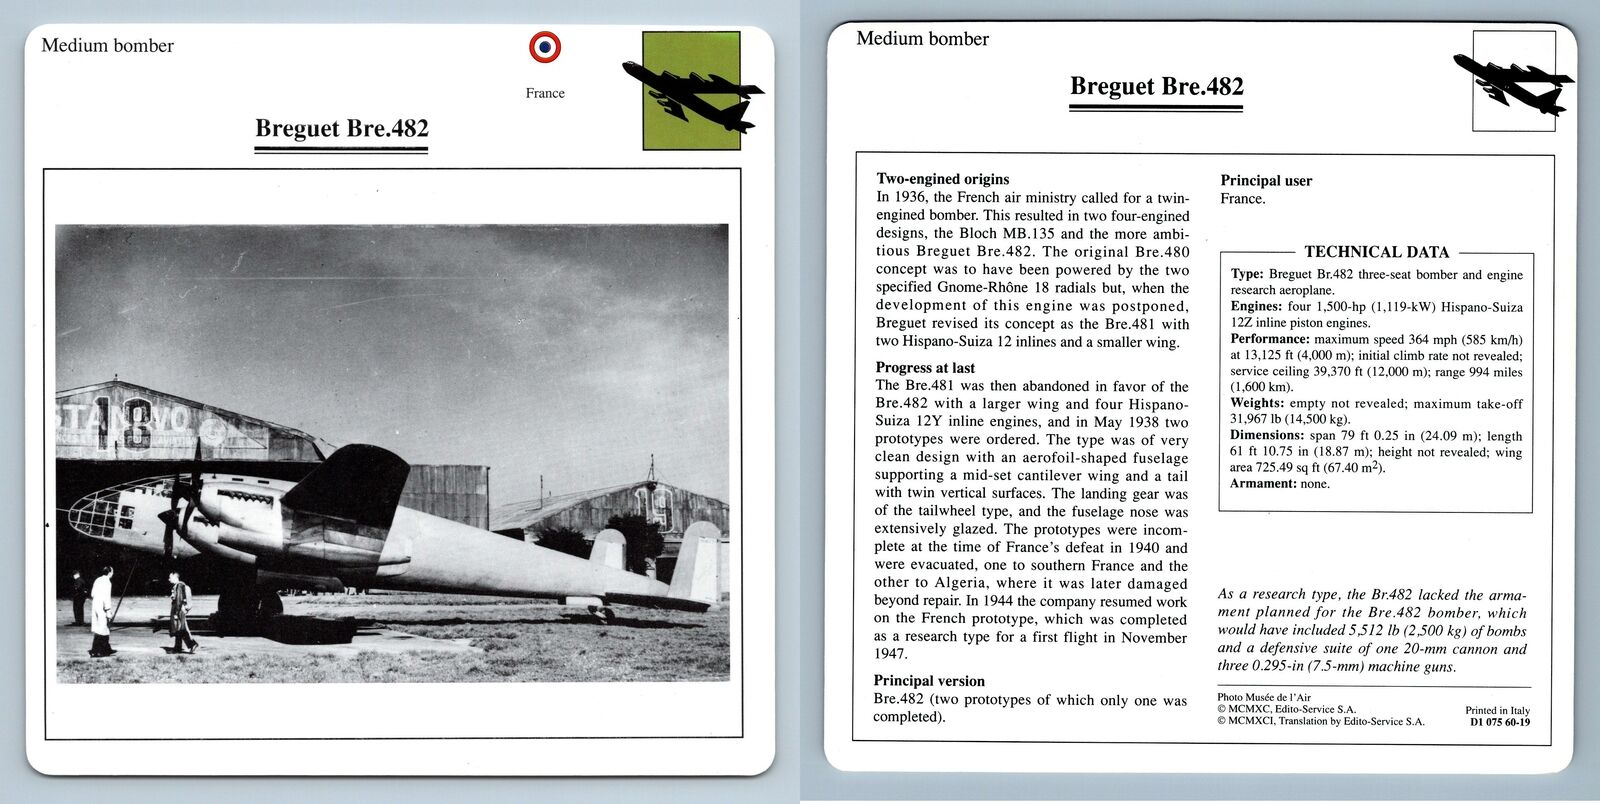 Breguet Bre.482 - Medium Bomber - Warplanes Collectors Club Card